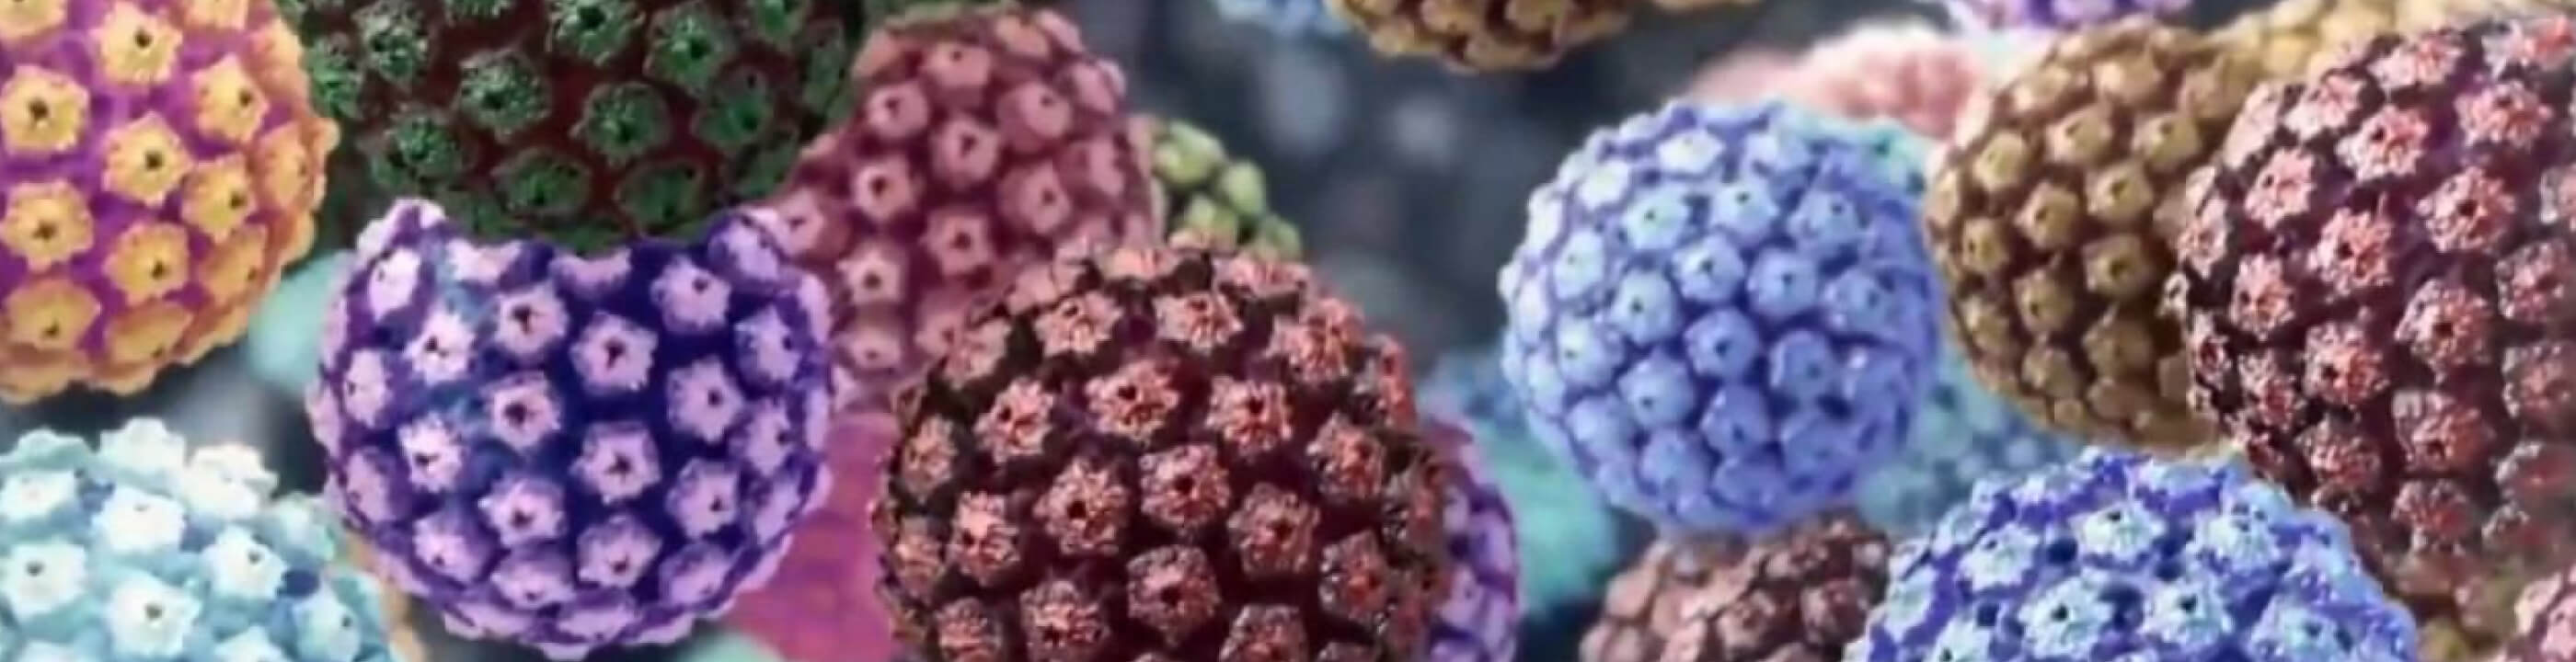 ПЦР-диагностика ВПЧ (вирус папилломы человека,HPV) скрининг 15 типов